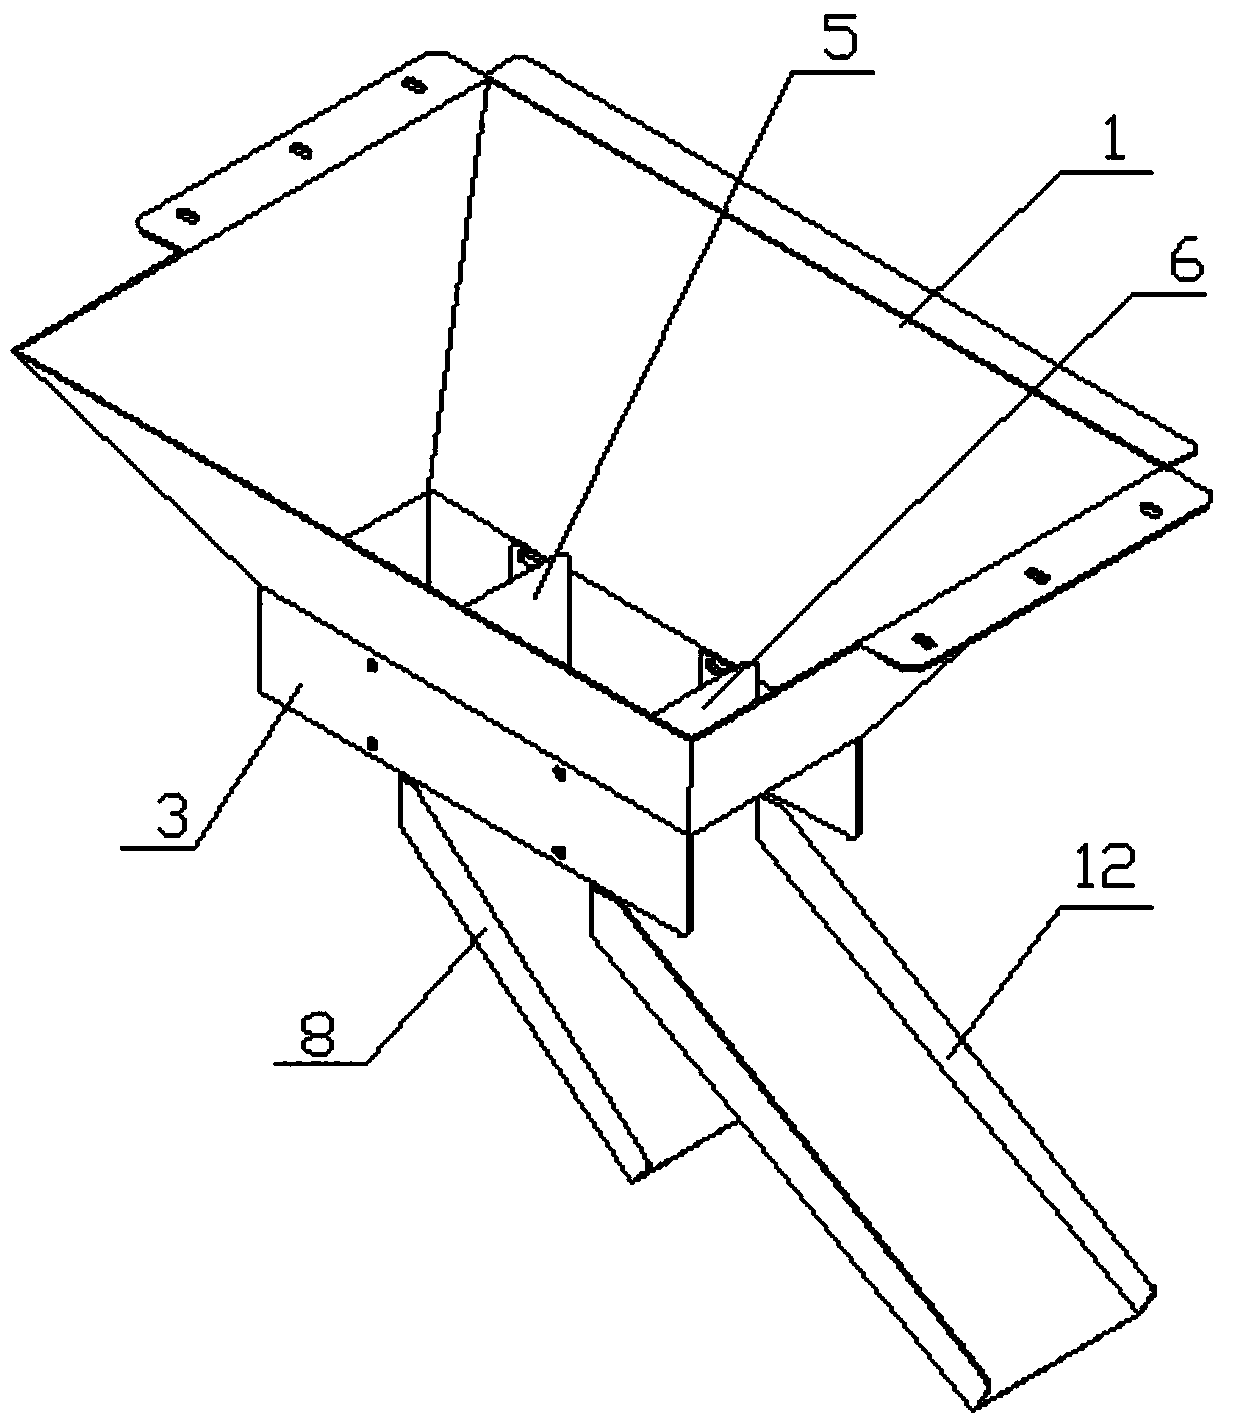 A uniform material distribution mechanism on an induced hoist